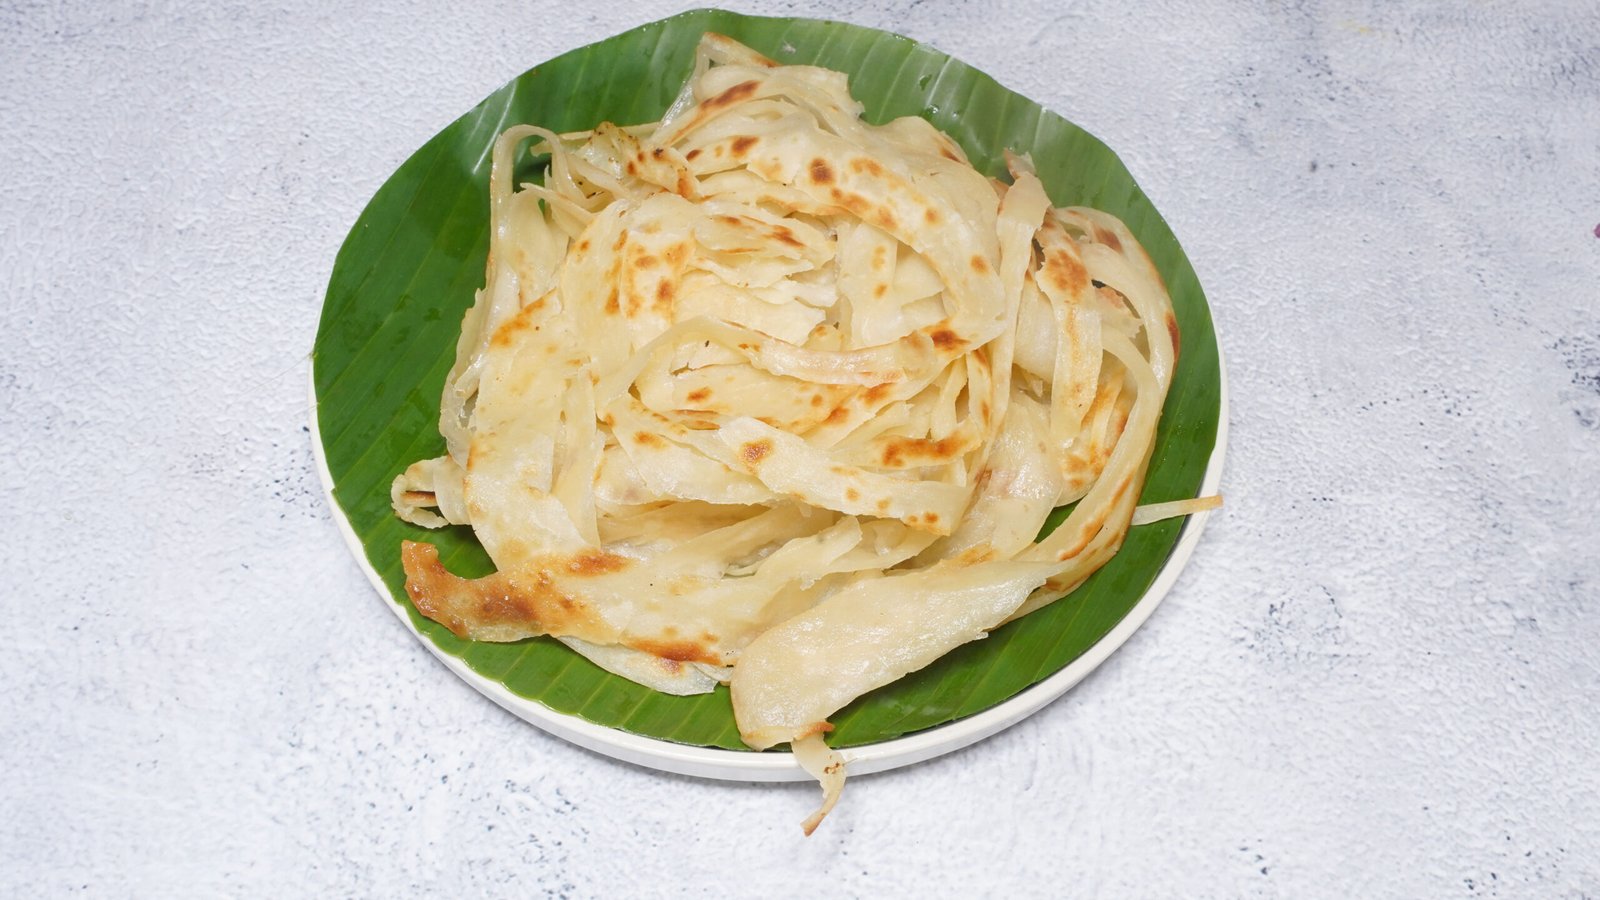 Nool Porotta, The Kerala Table